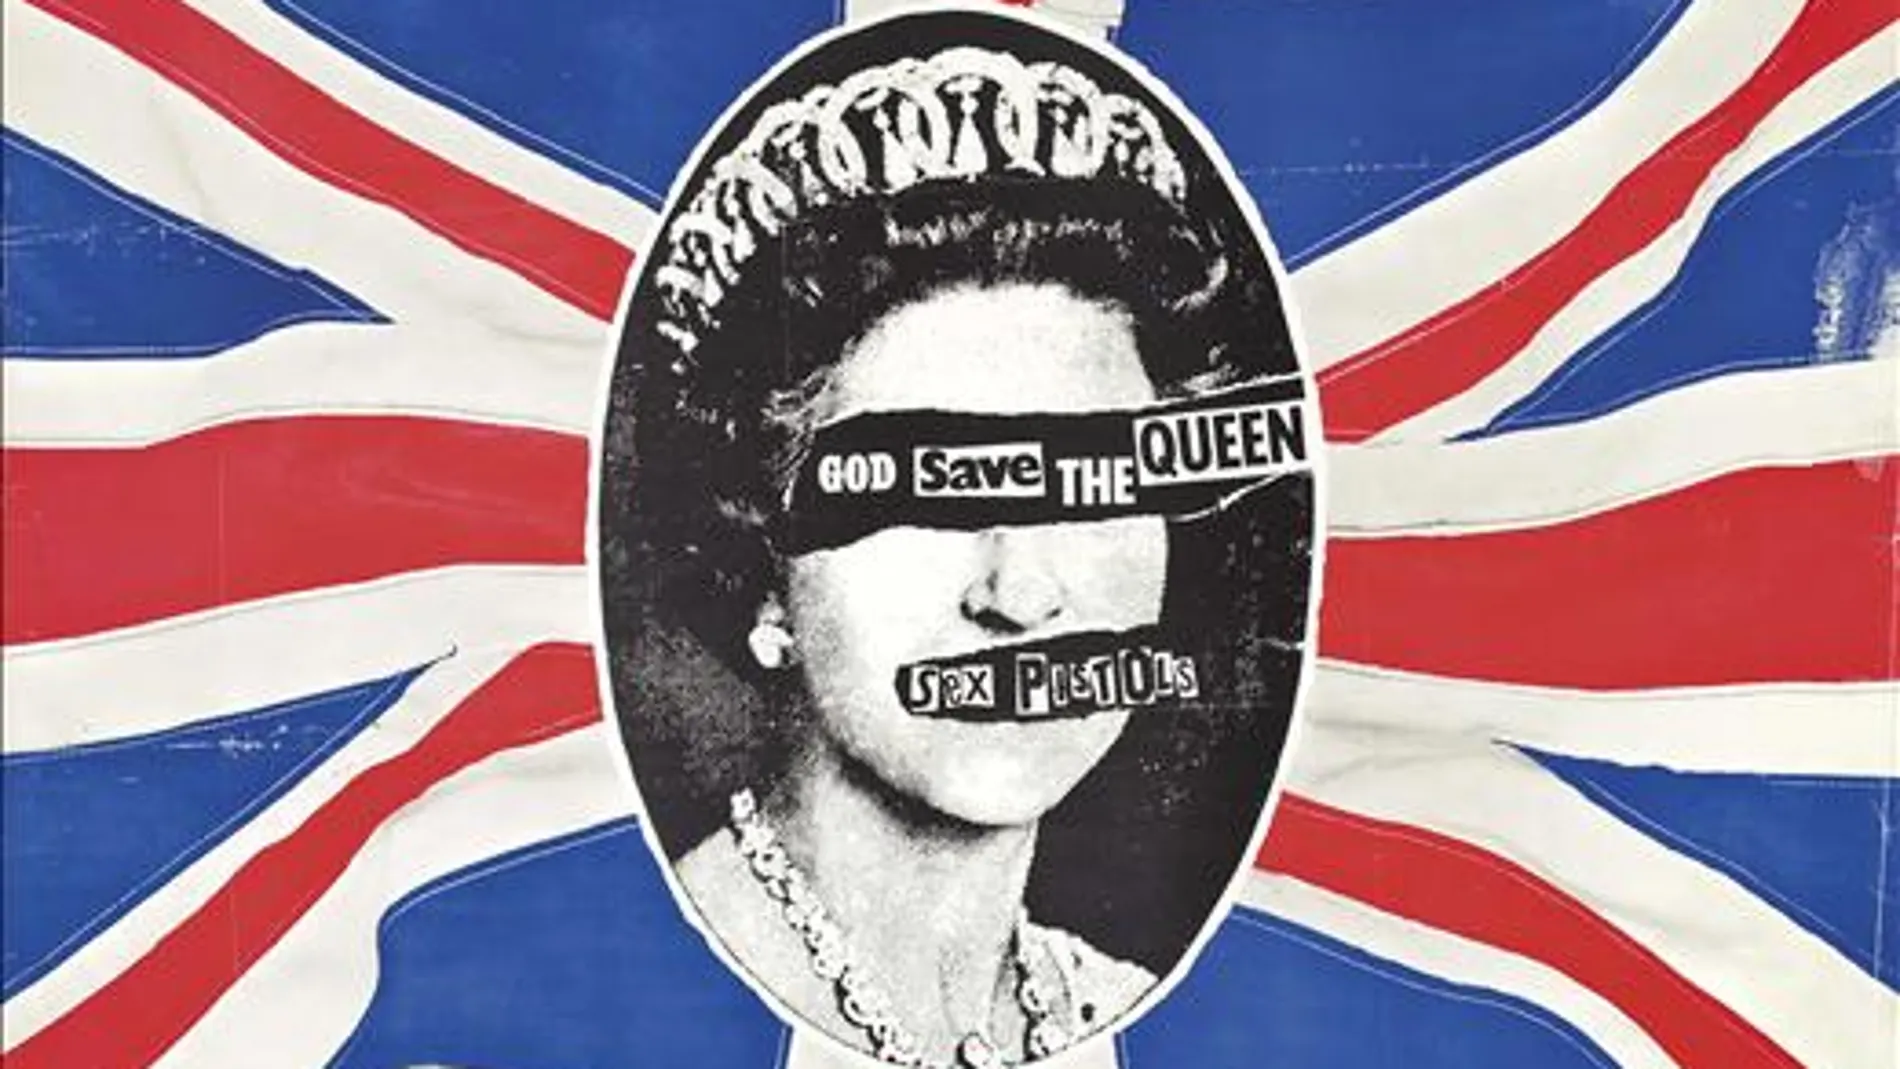 Poster del single "God Save The Queen", del grupo británico Sex Pistols, 1977, diseñado por Jamie Reid